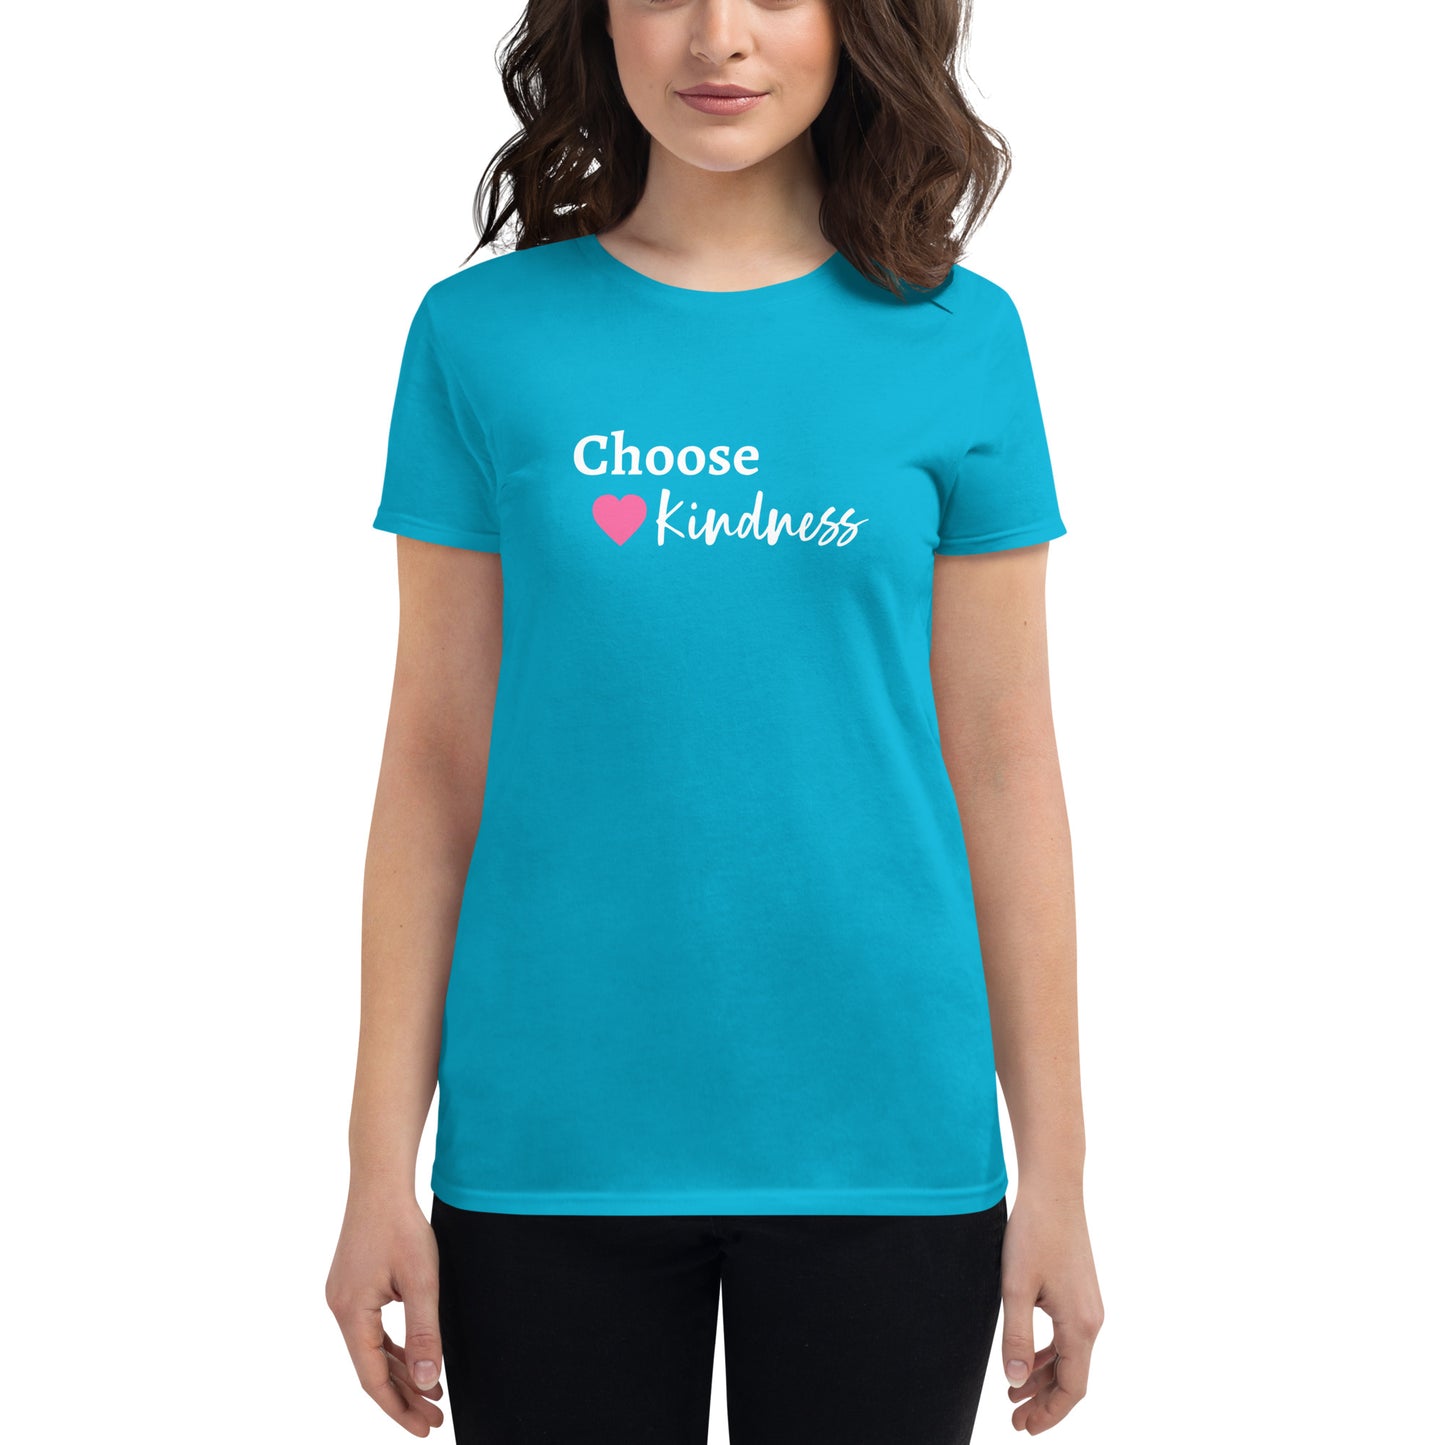 Choose kindness women's short sleeve t-shirt